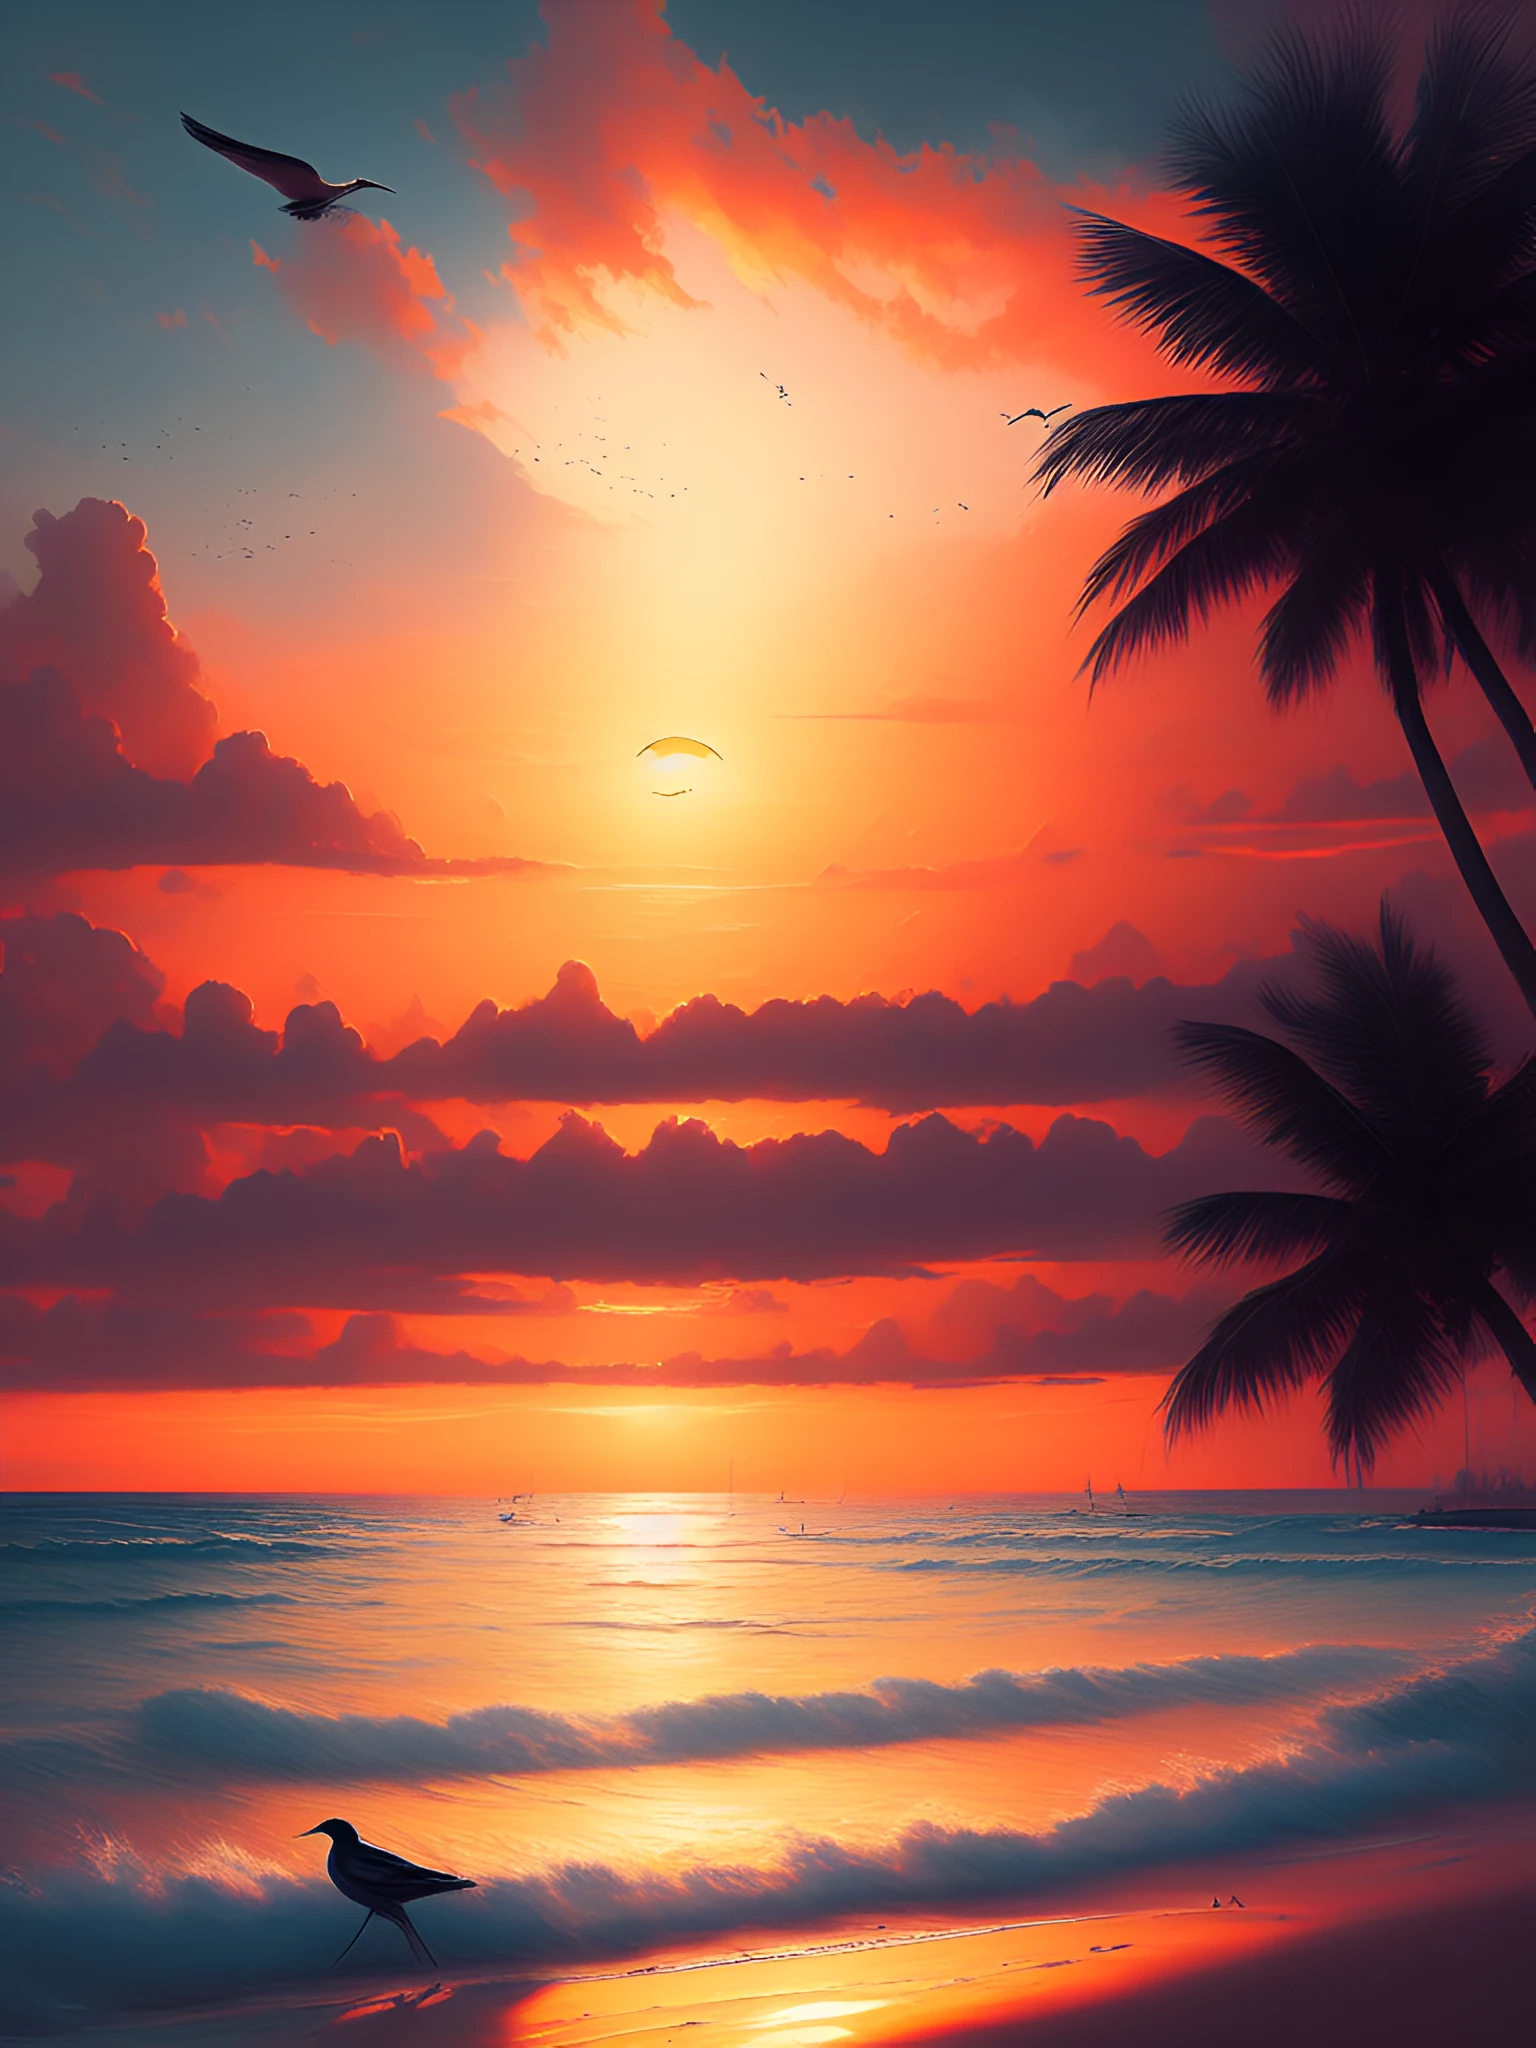 dreamlikeart uma pintura de uma linda praia paradisíaca ao pôr do sol, sol no meio, pássaro distante voando no horizonte, tendência na artstation no estilo de Greg Rutkowski